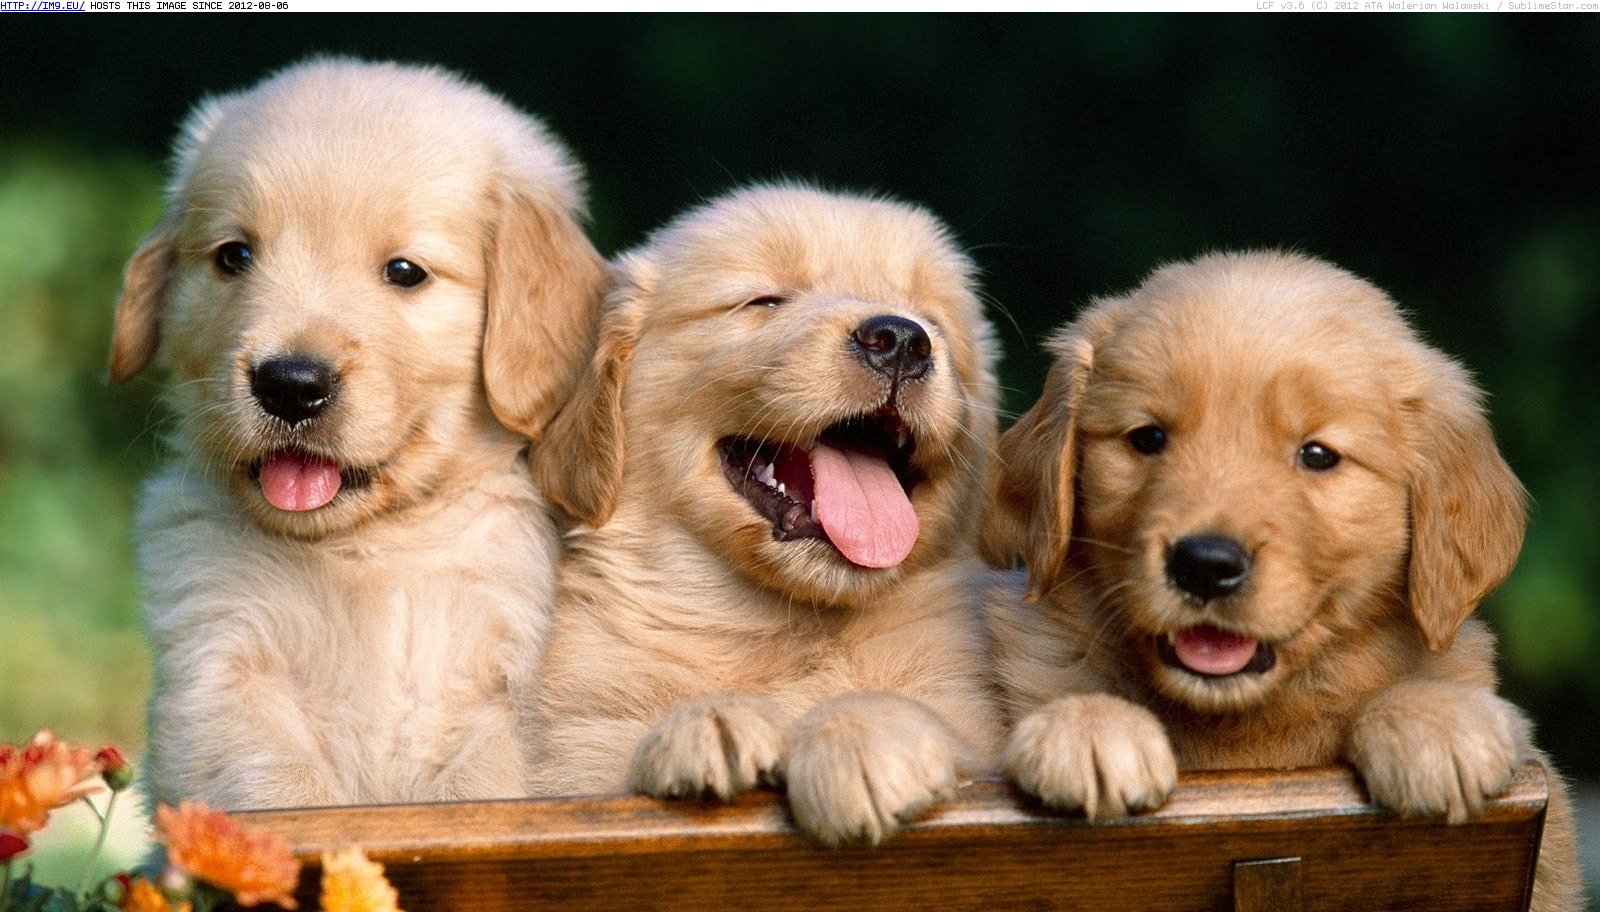 Puppy Wallpaper Share Bookmark Golden Retriever Dog